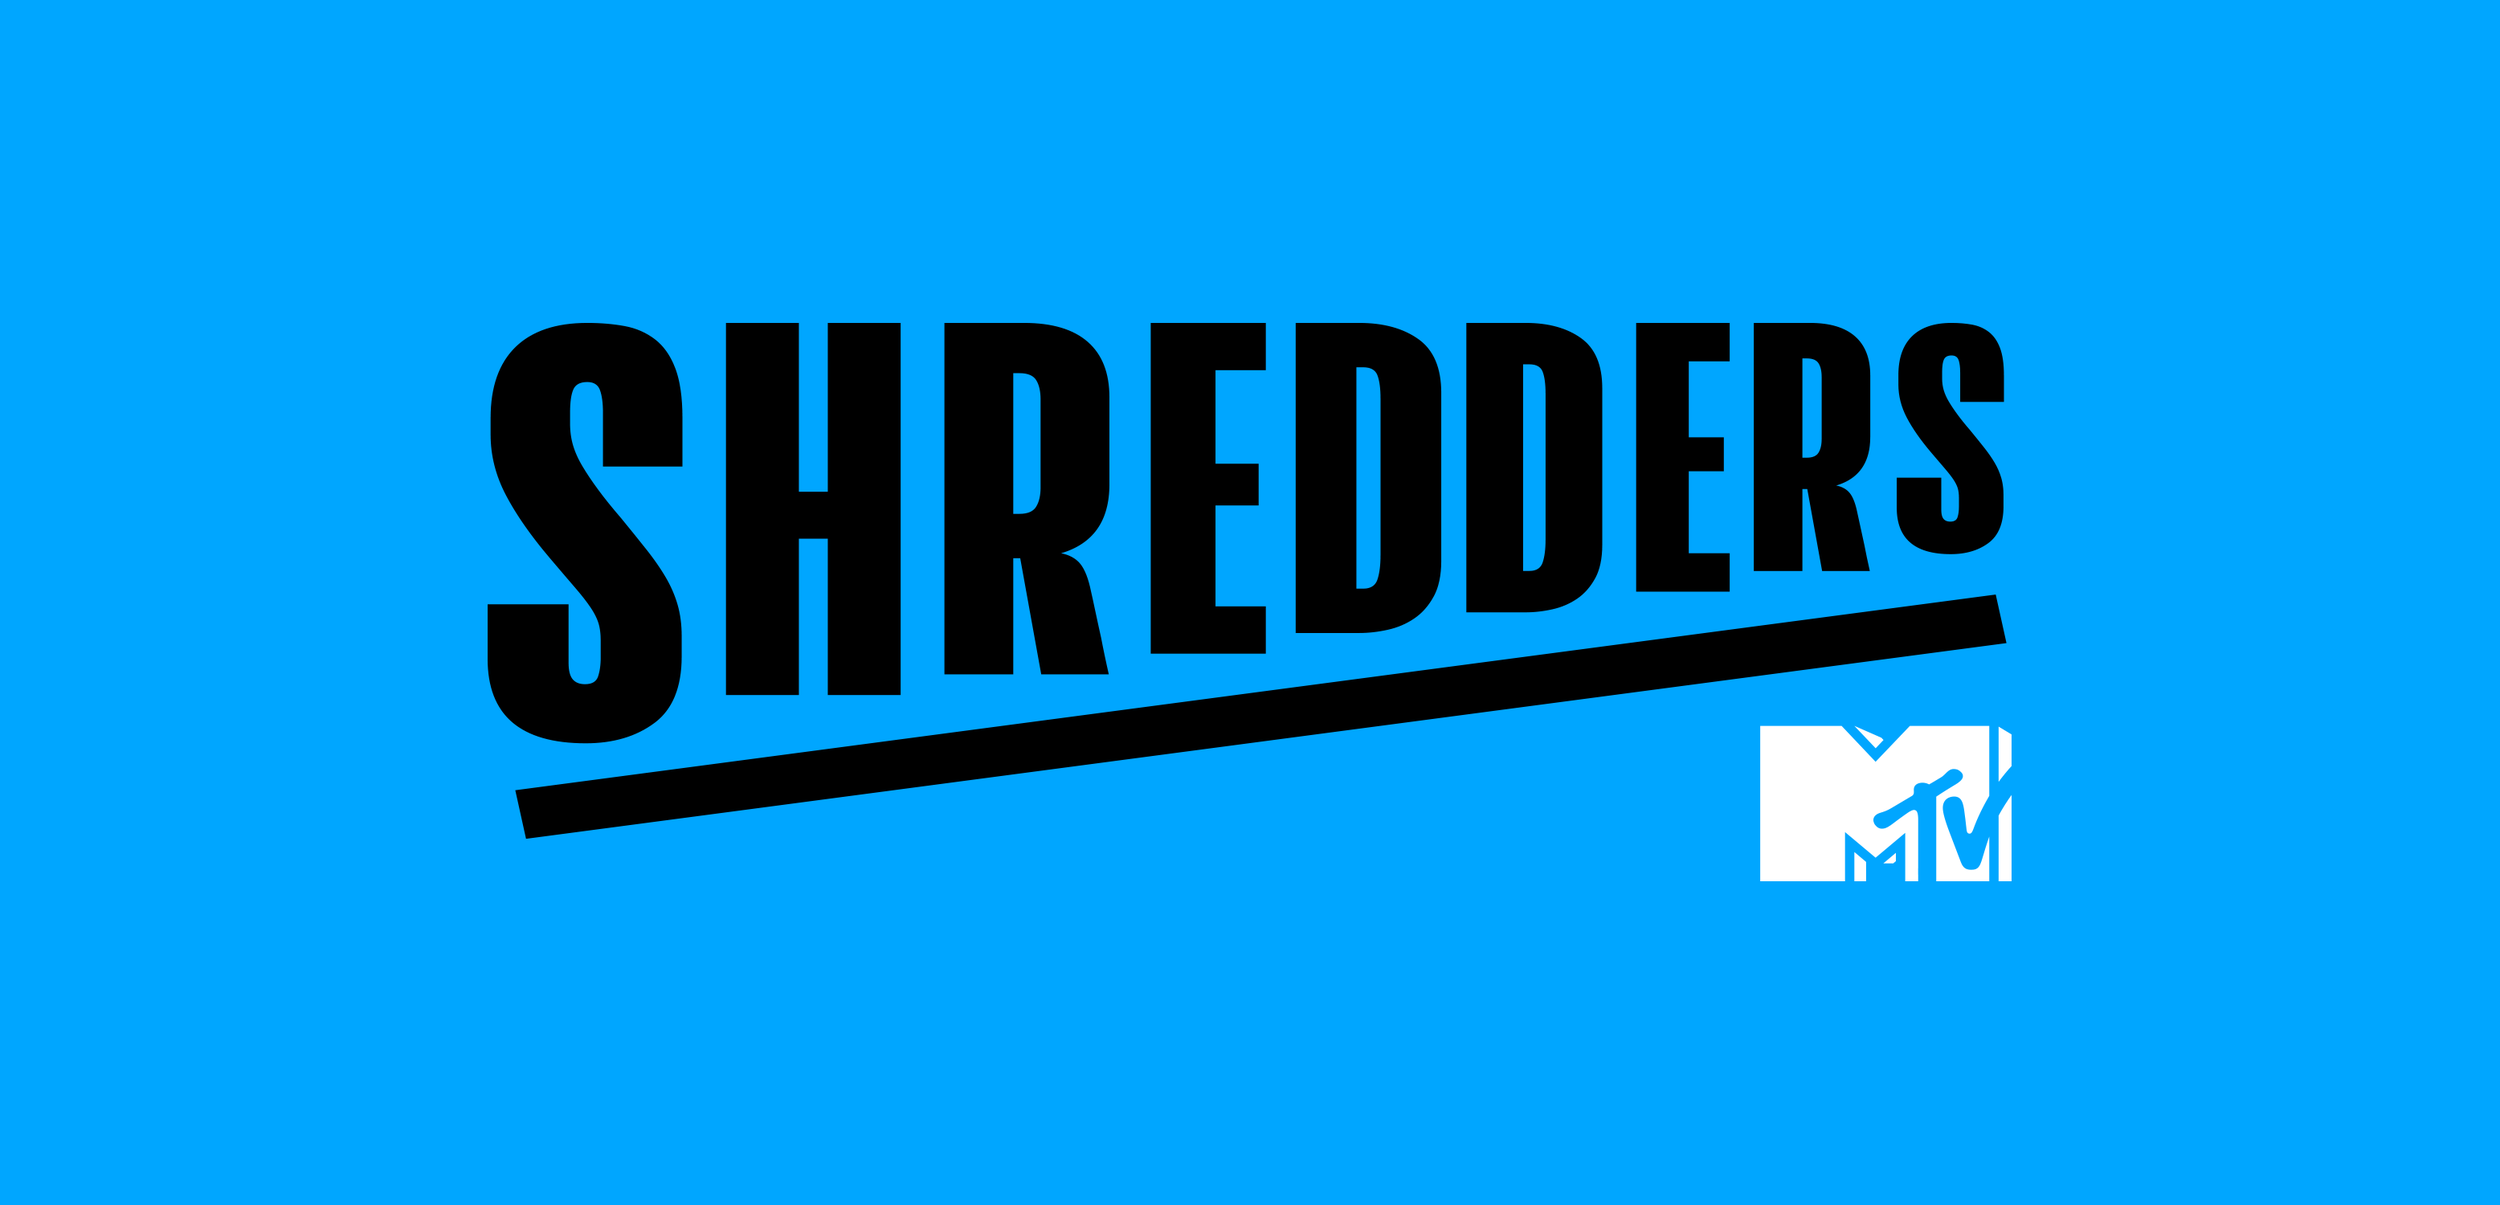 MTV-shredders-logo-long-v3.png